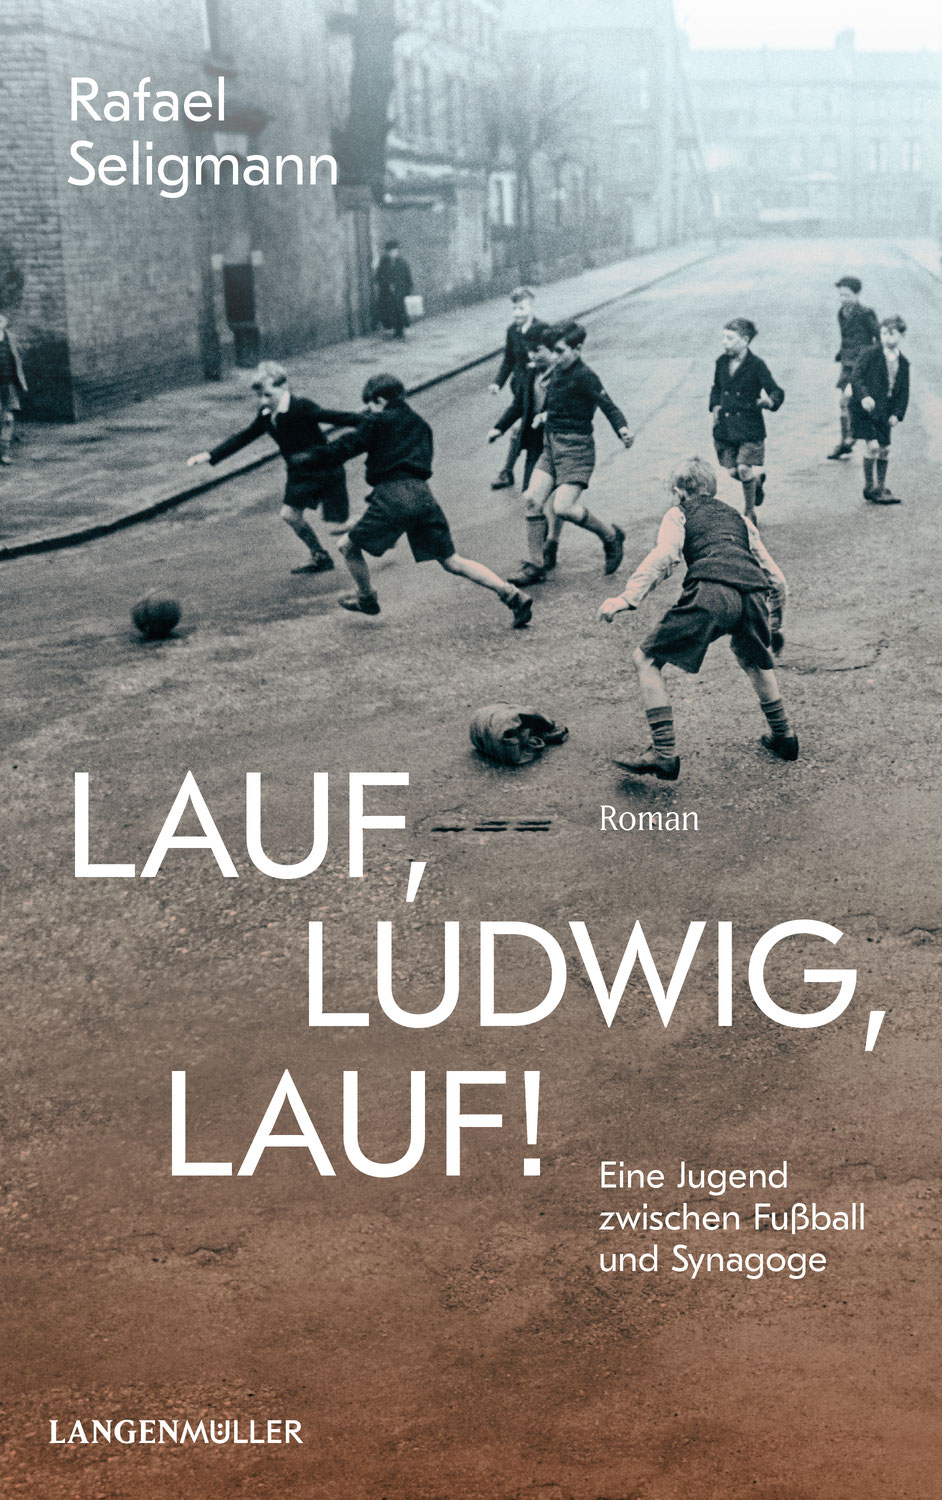 Rezension: "Lauf, Ludwig, Lauf" von Rafael Seligmann